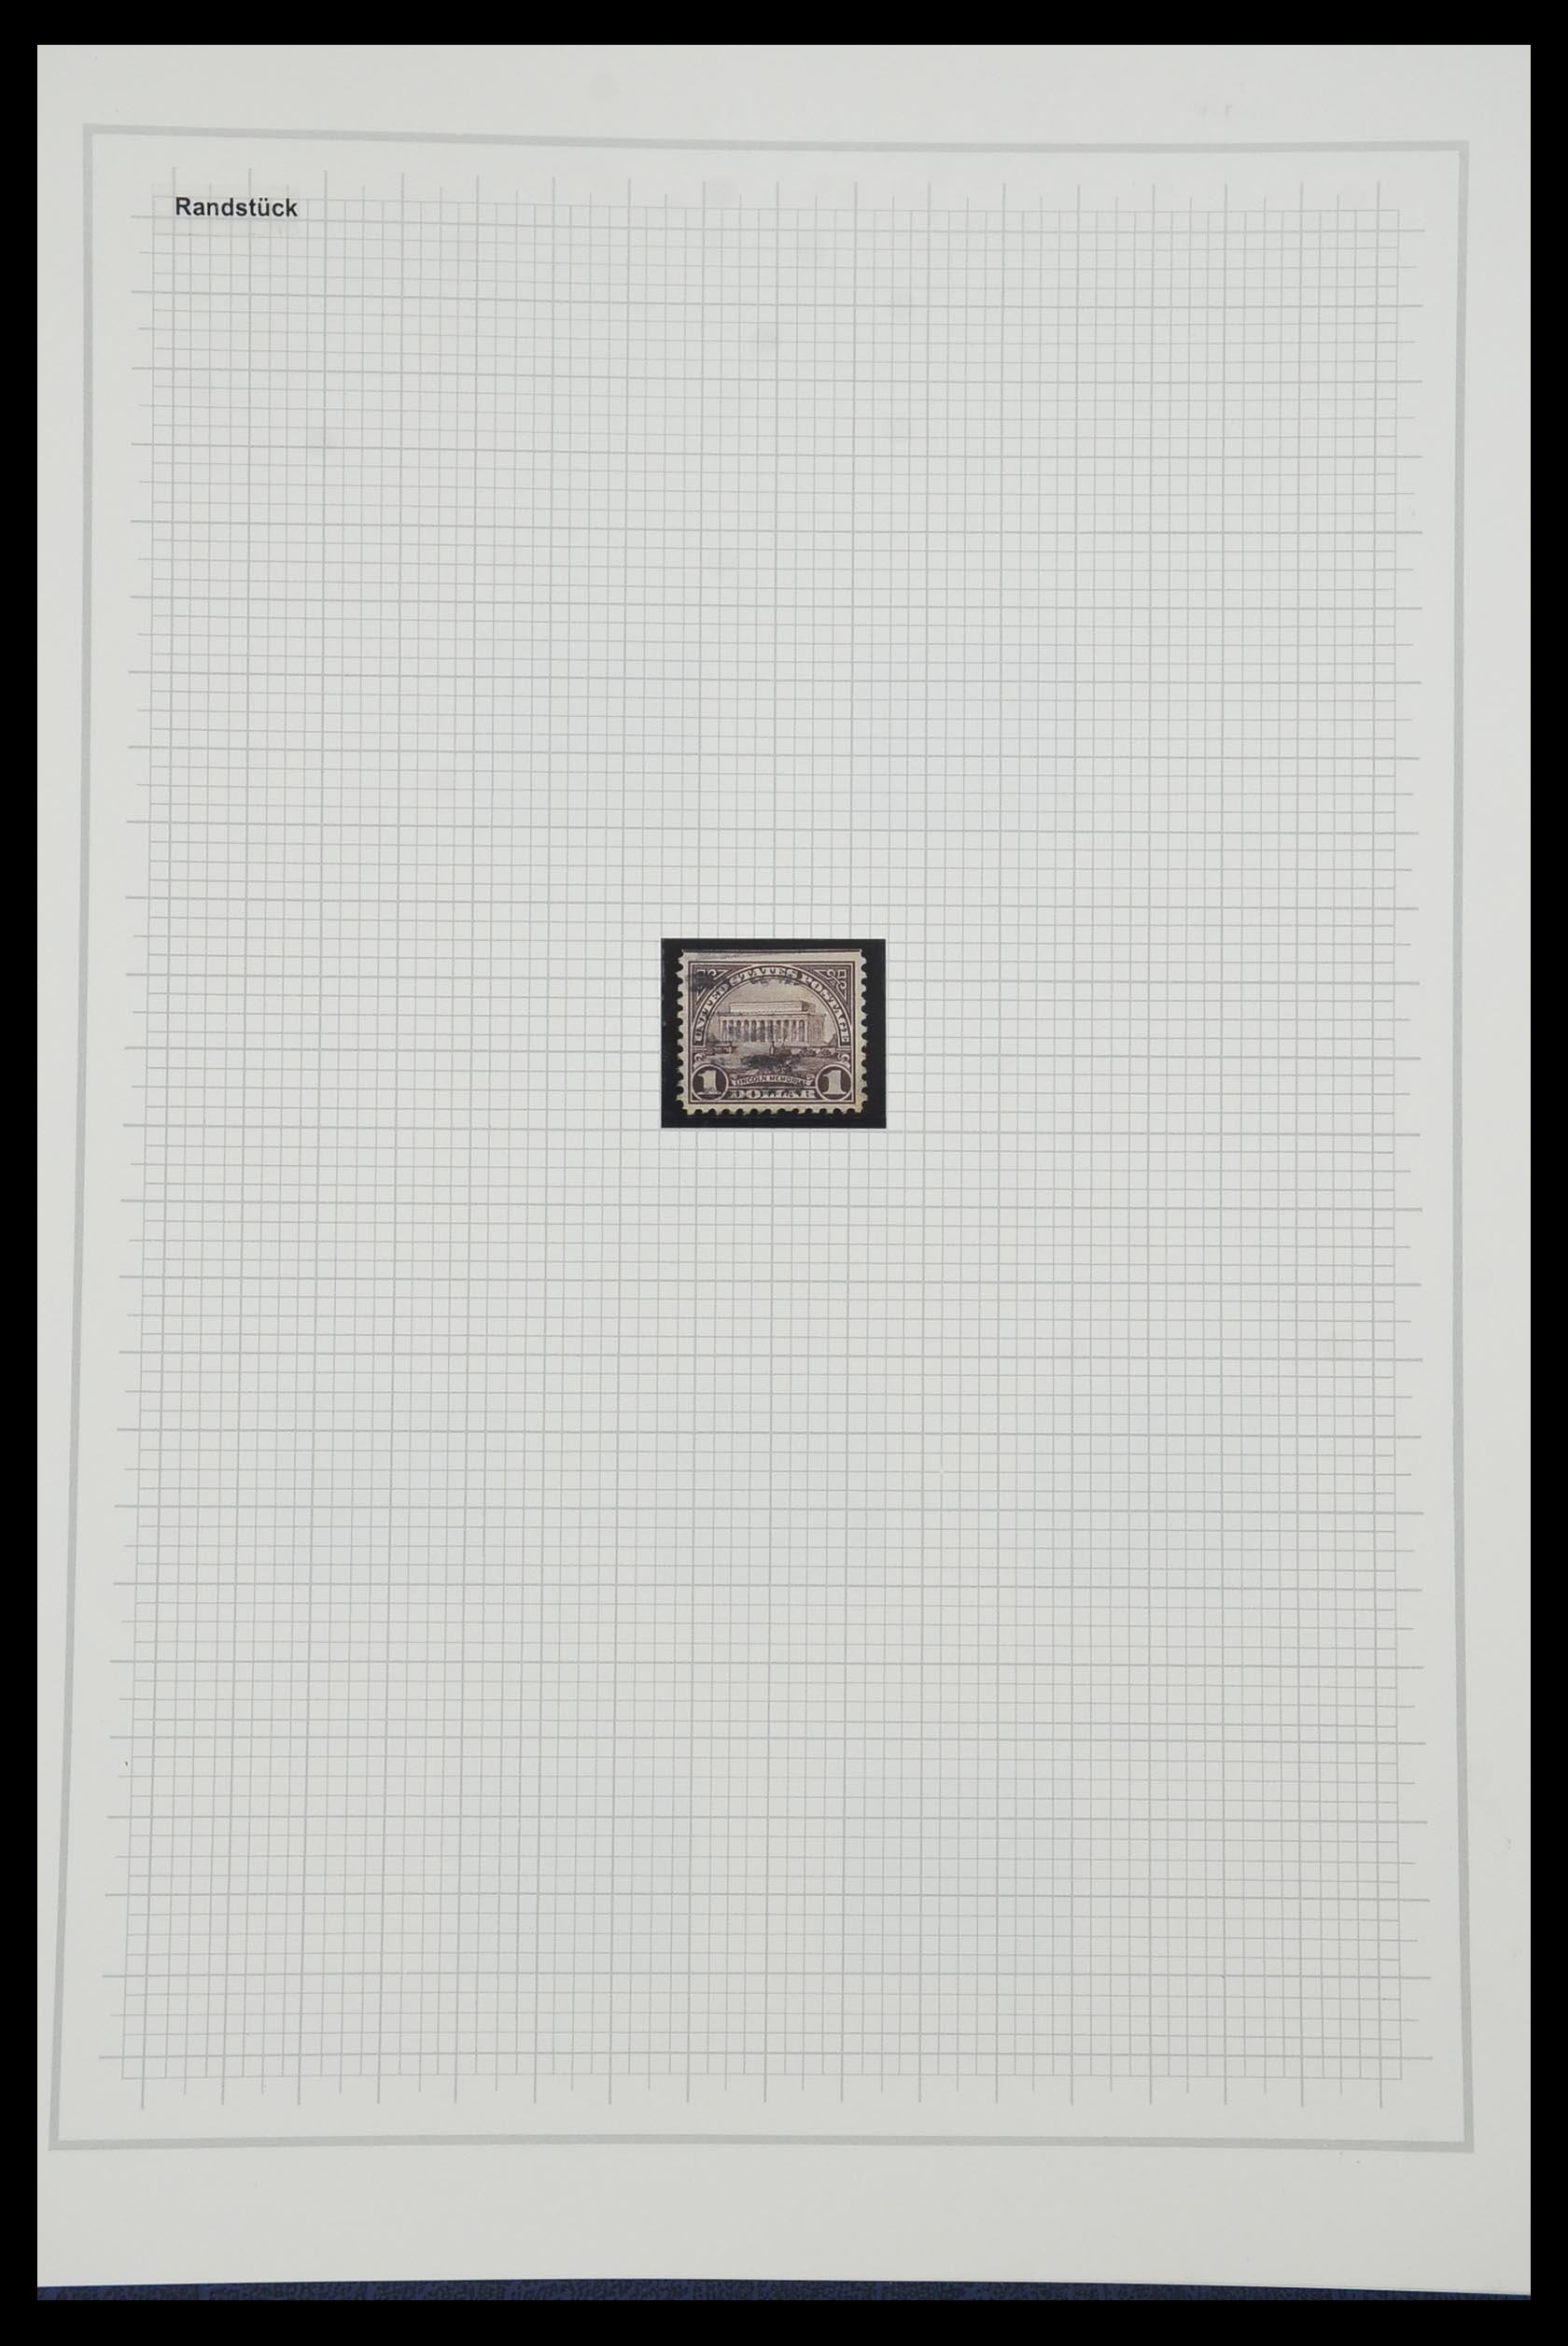 34309 533 - Stamp collection 34309 USA 1922-1934.